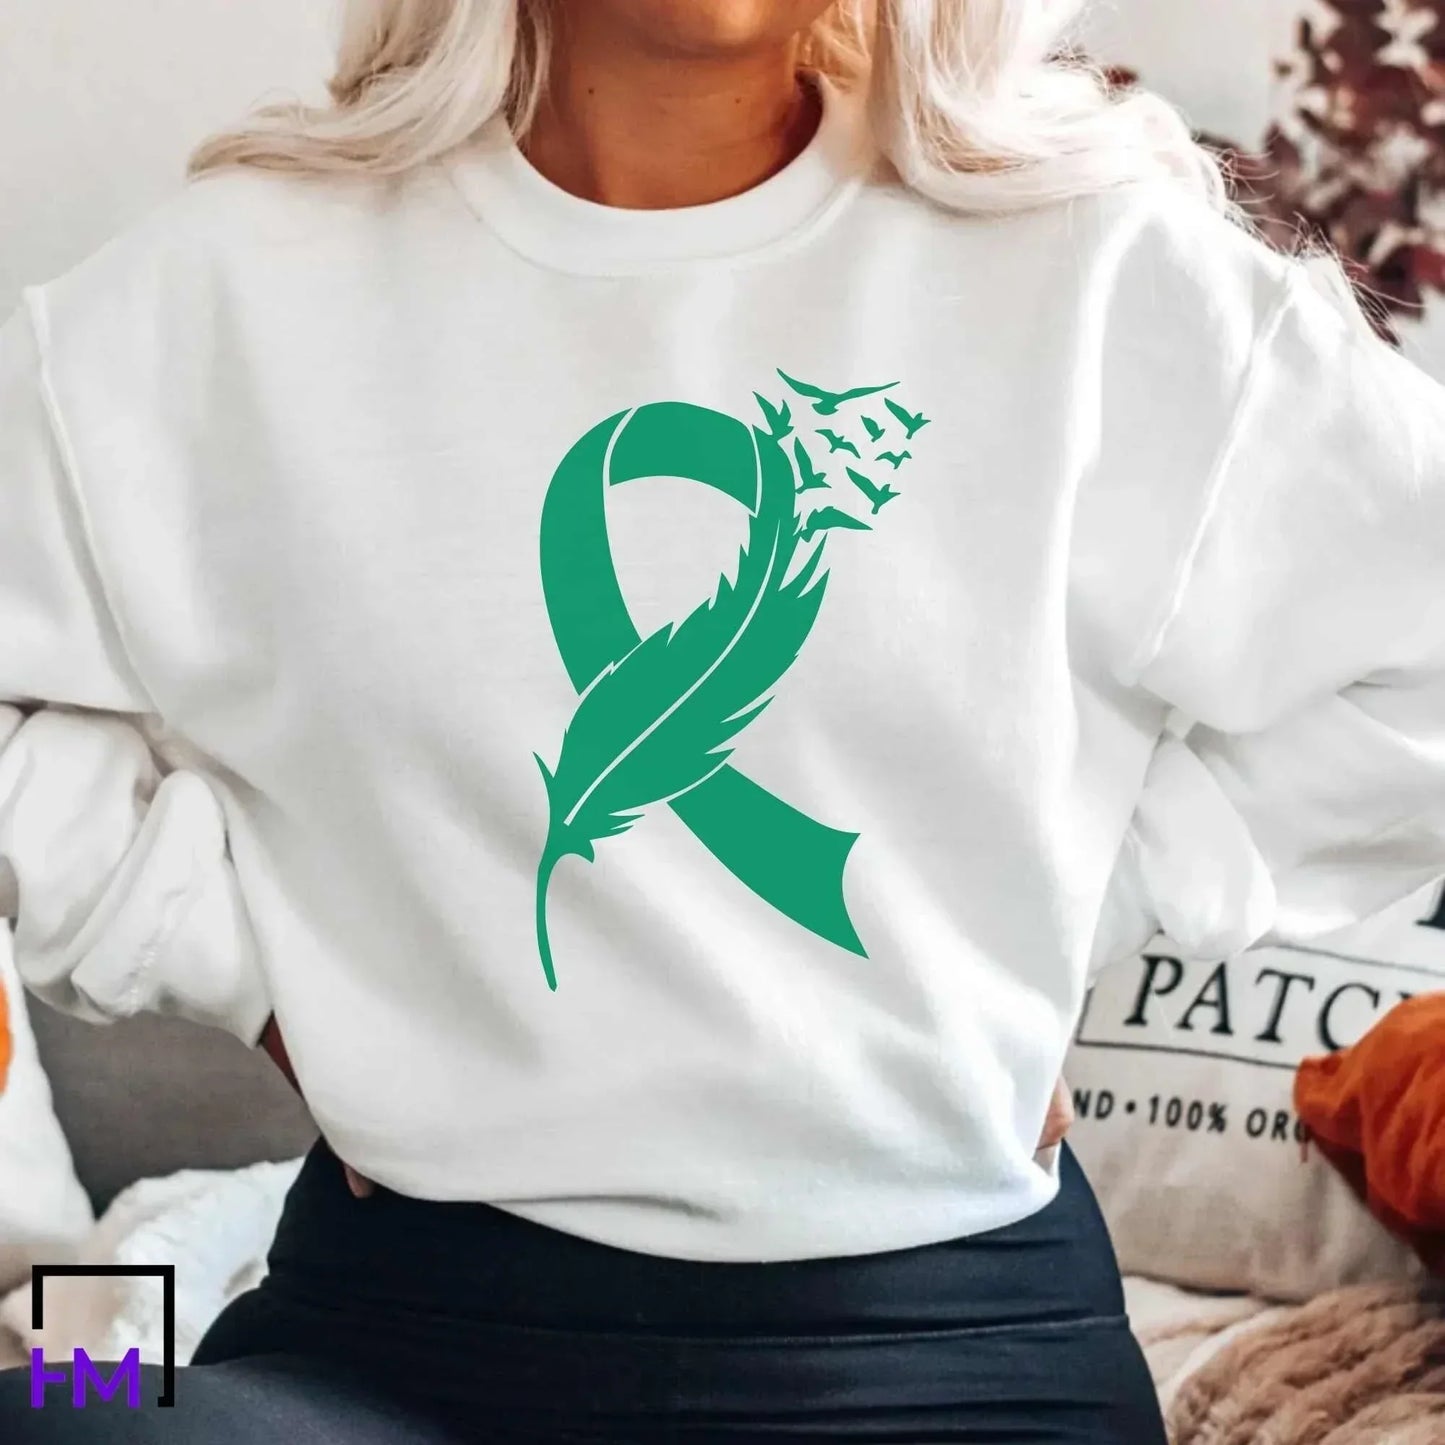 Liver Cancer Shirt, Liver Cancer Warrior Gift, Liver Cancer Green Ribbon Shirt, Liver Cancer Awareness Shirt, Cancer Fighter Gifts, Support HMDesignStudioUS